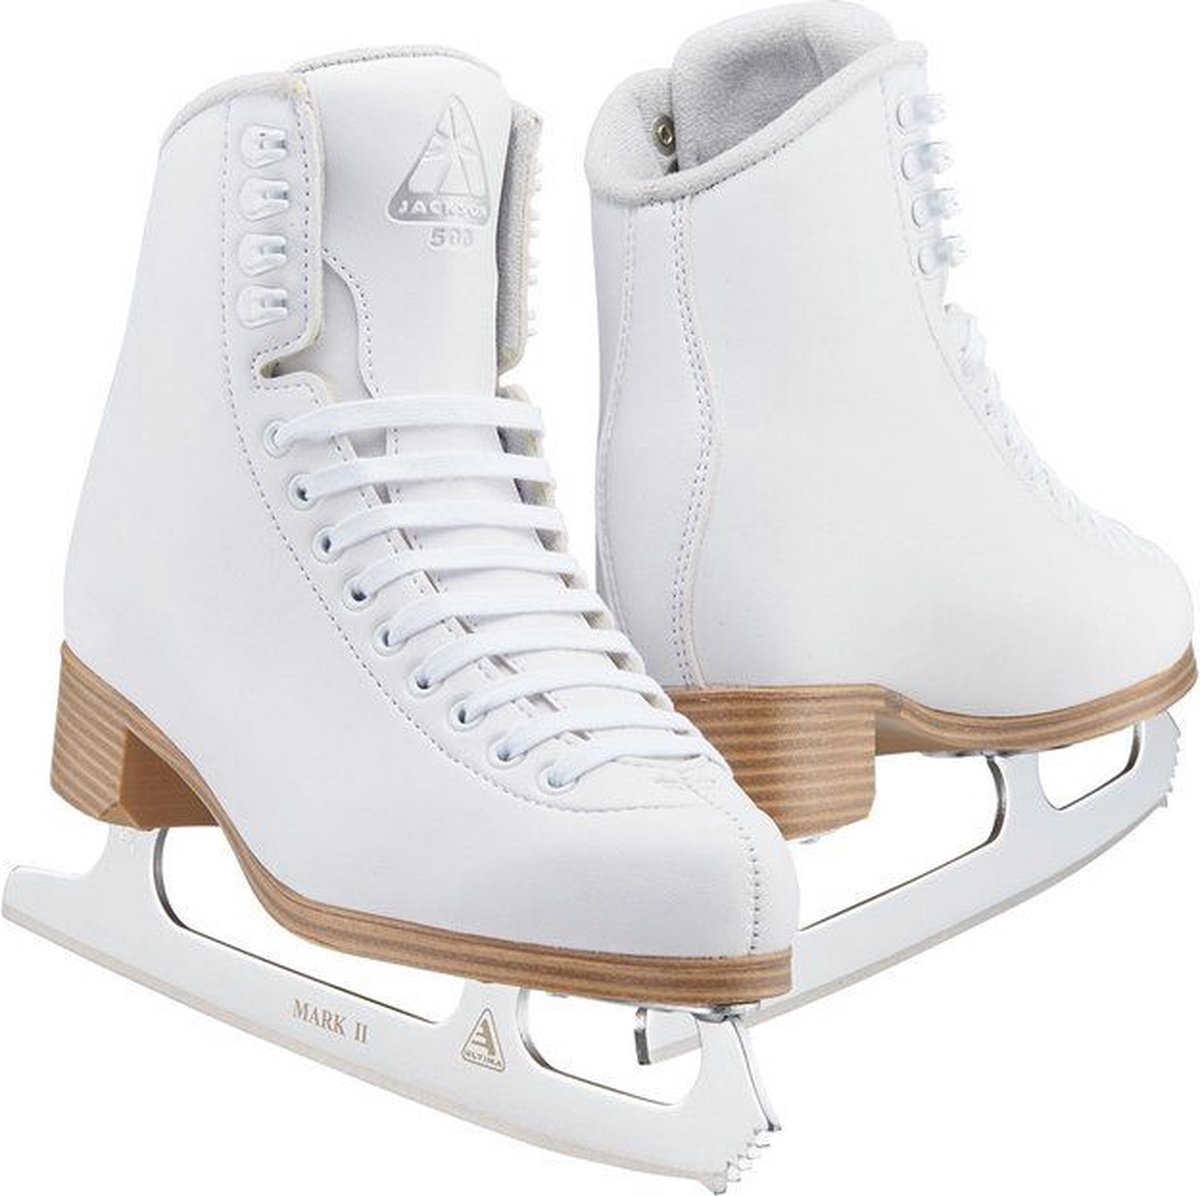 Jackson classic 500 schaatsen - 